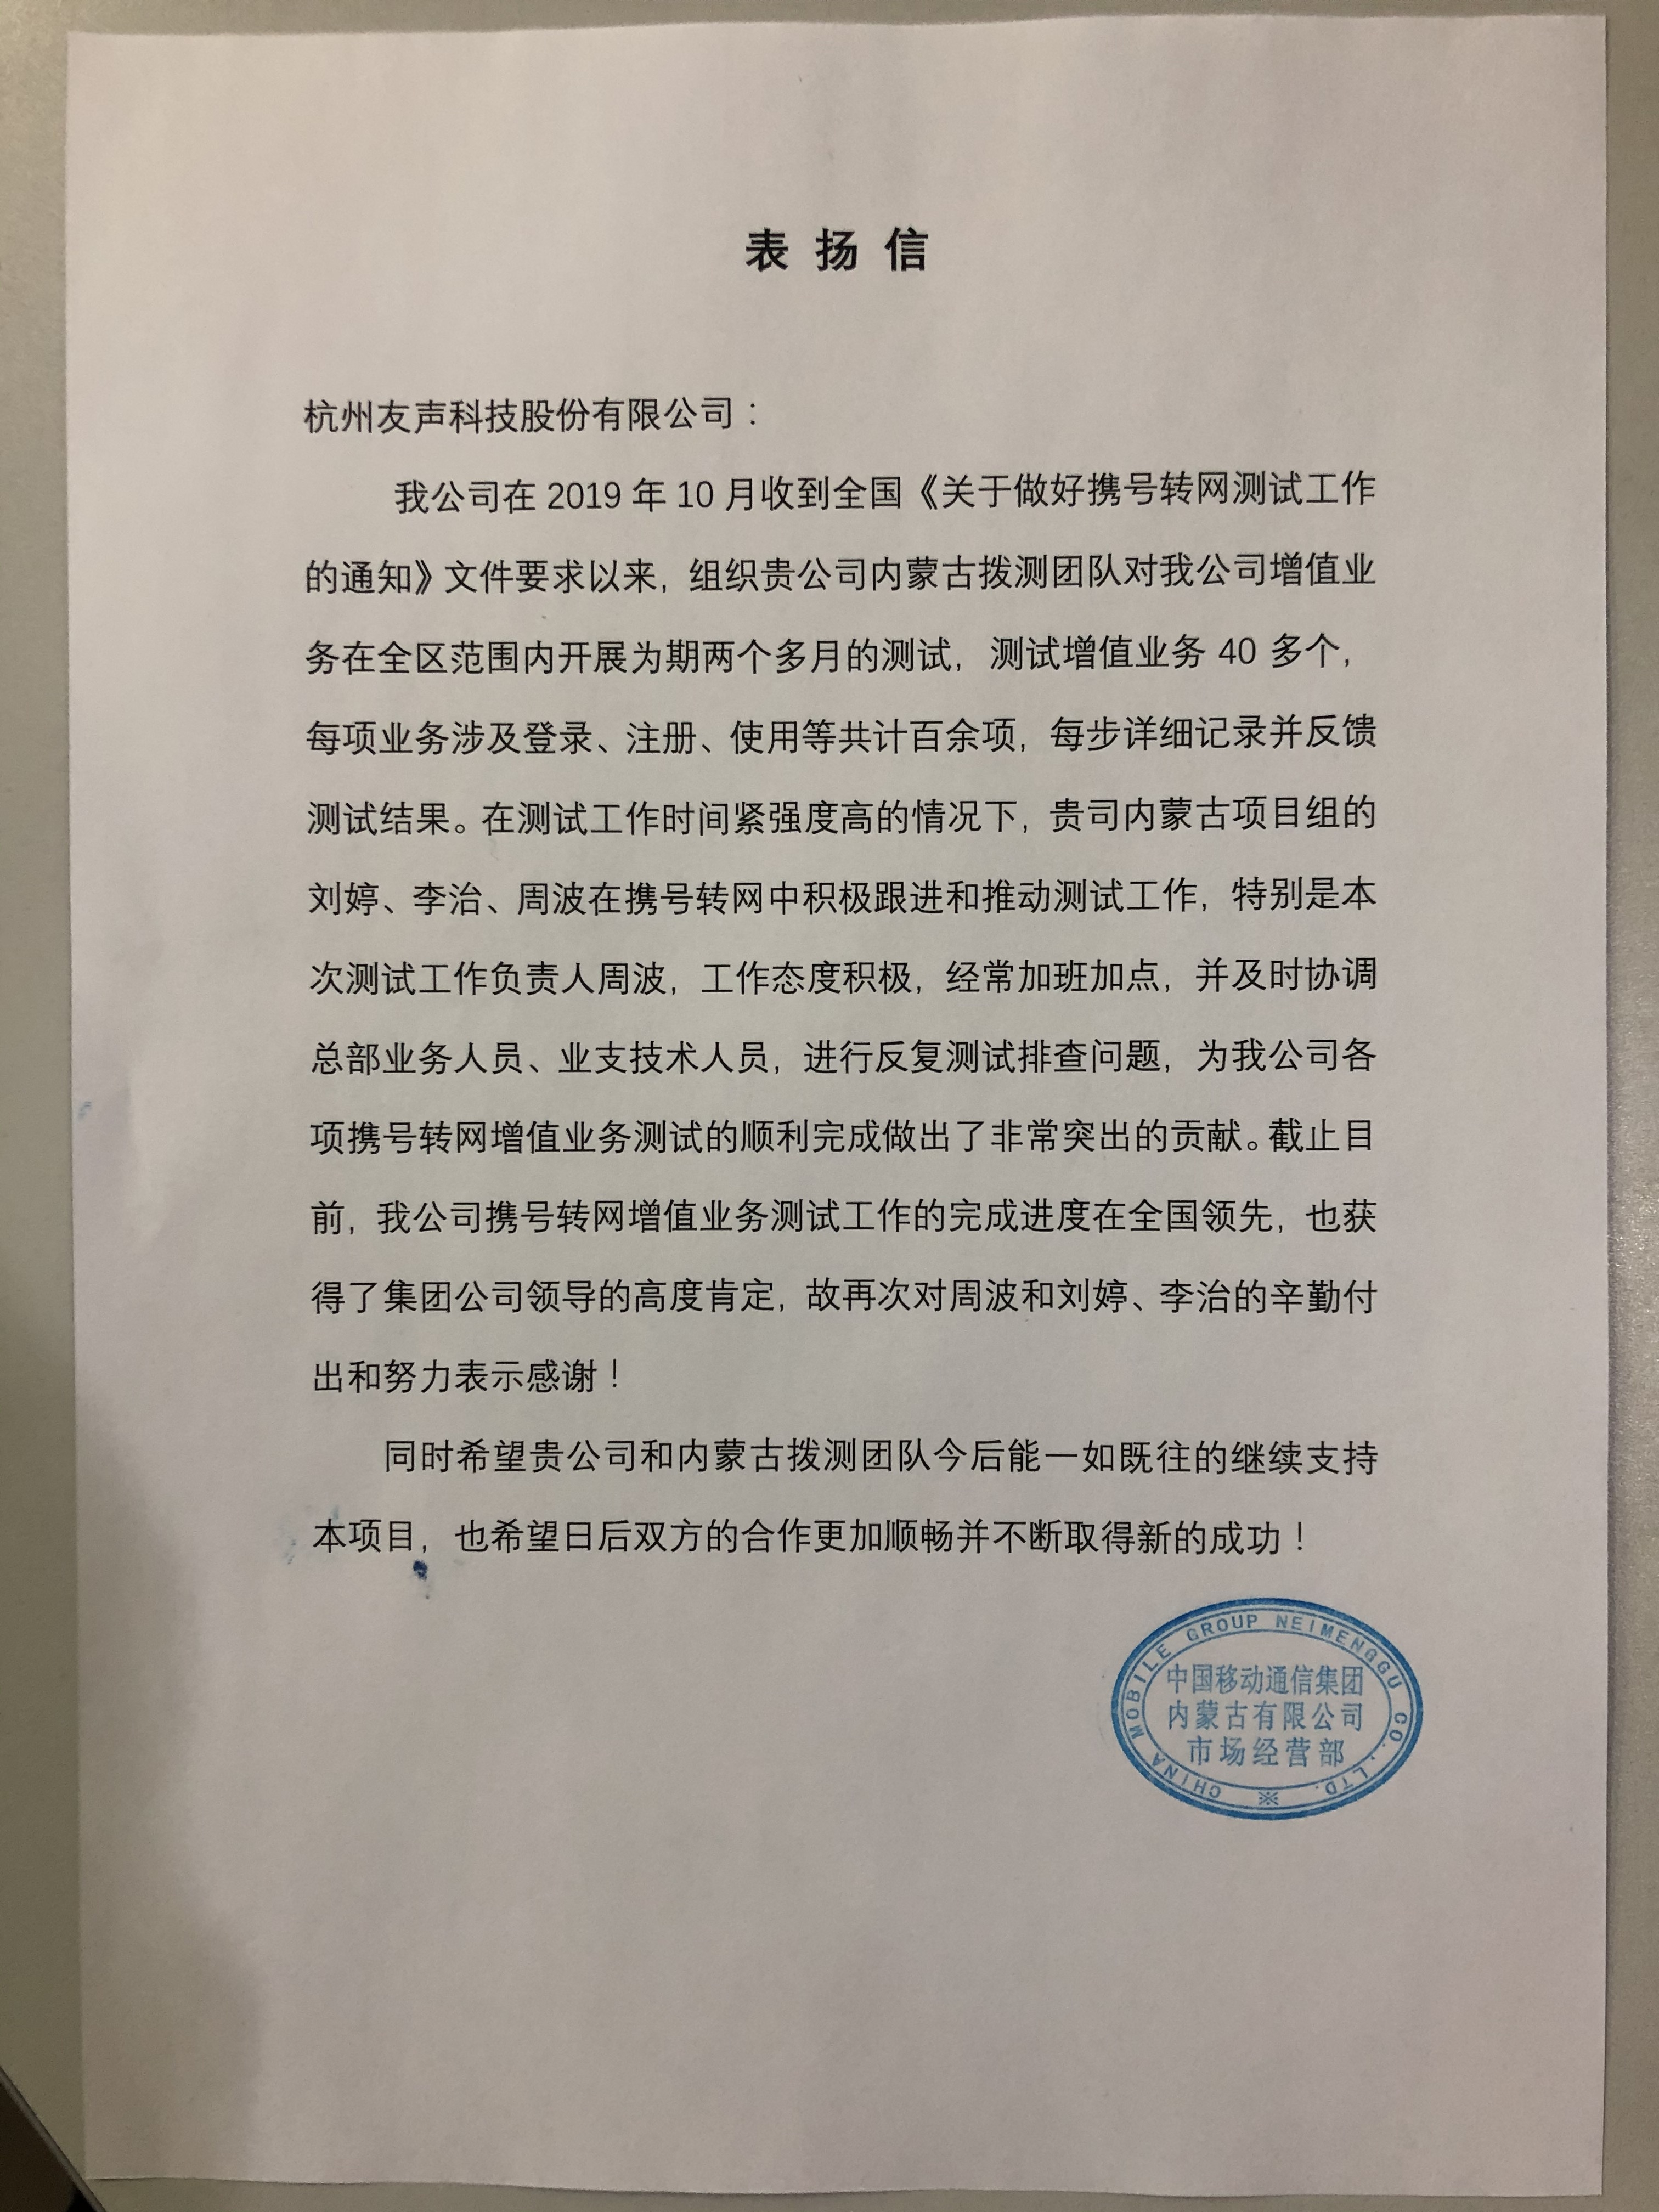 中国移动通信集团内蒙古有限公司发来表扬信:对蒙移数项目的拨测团队